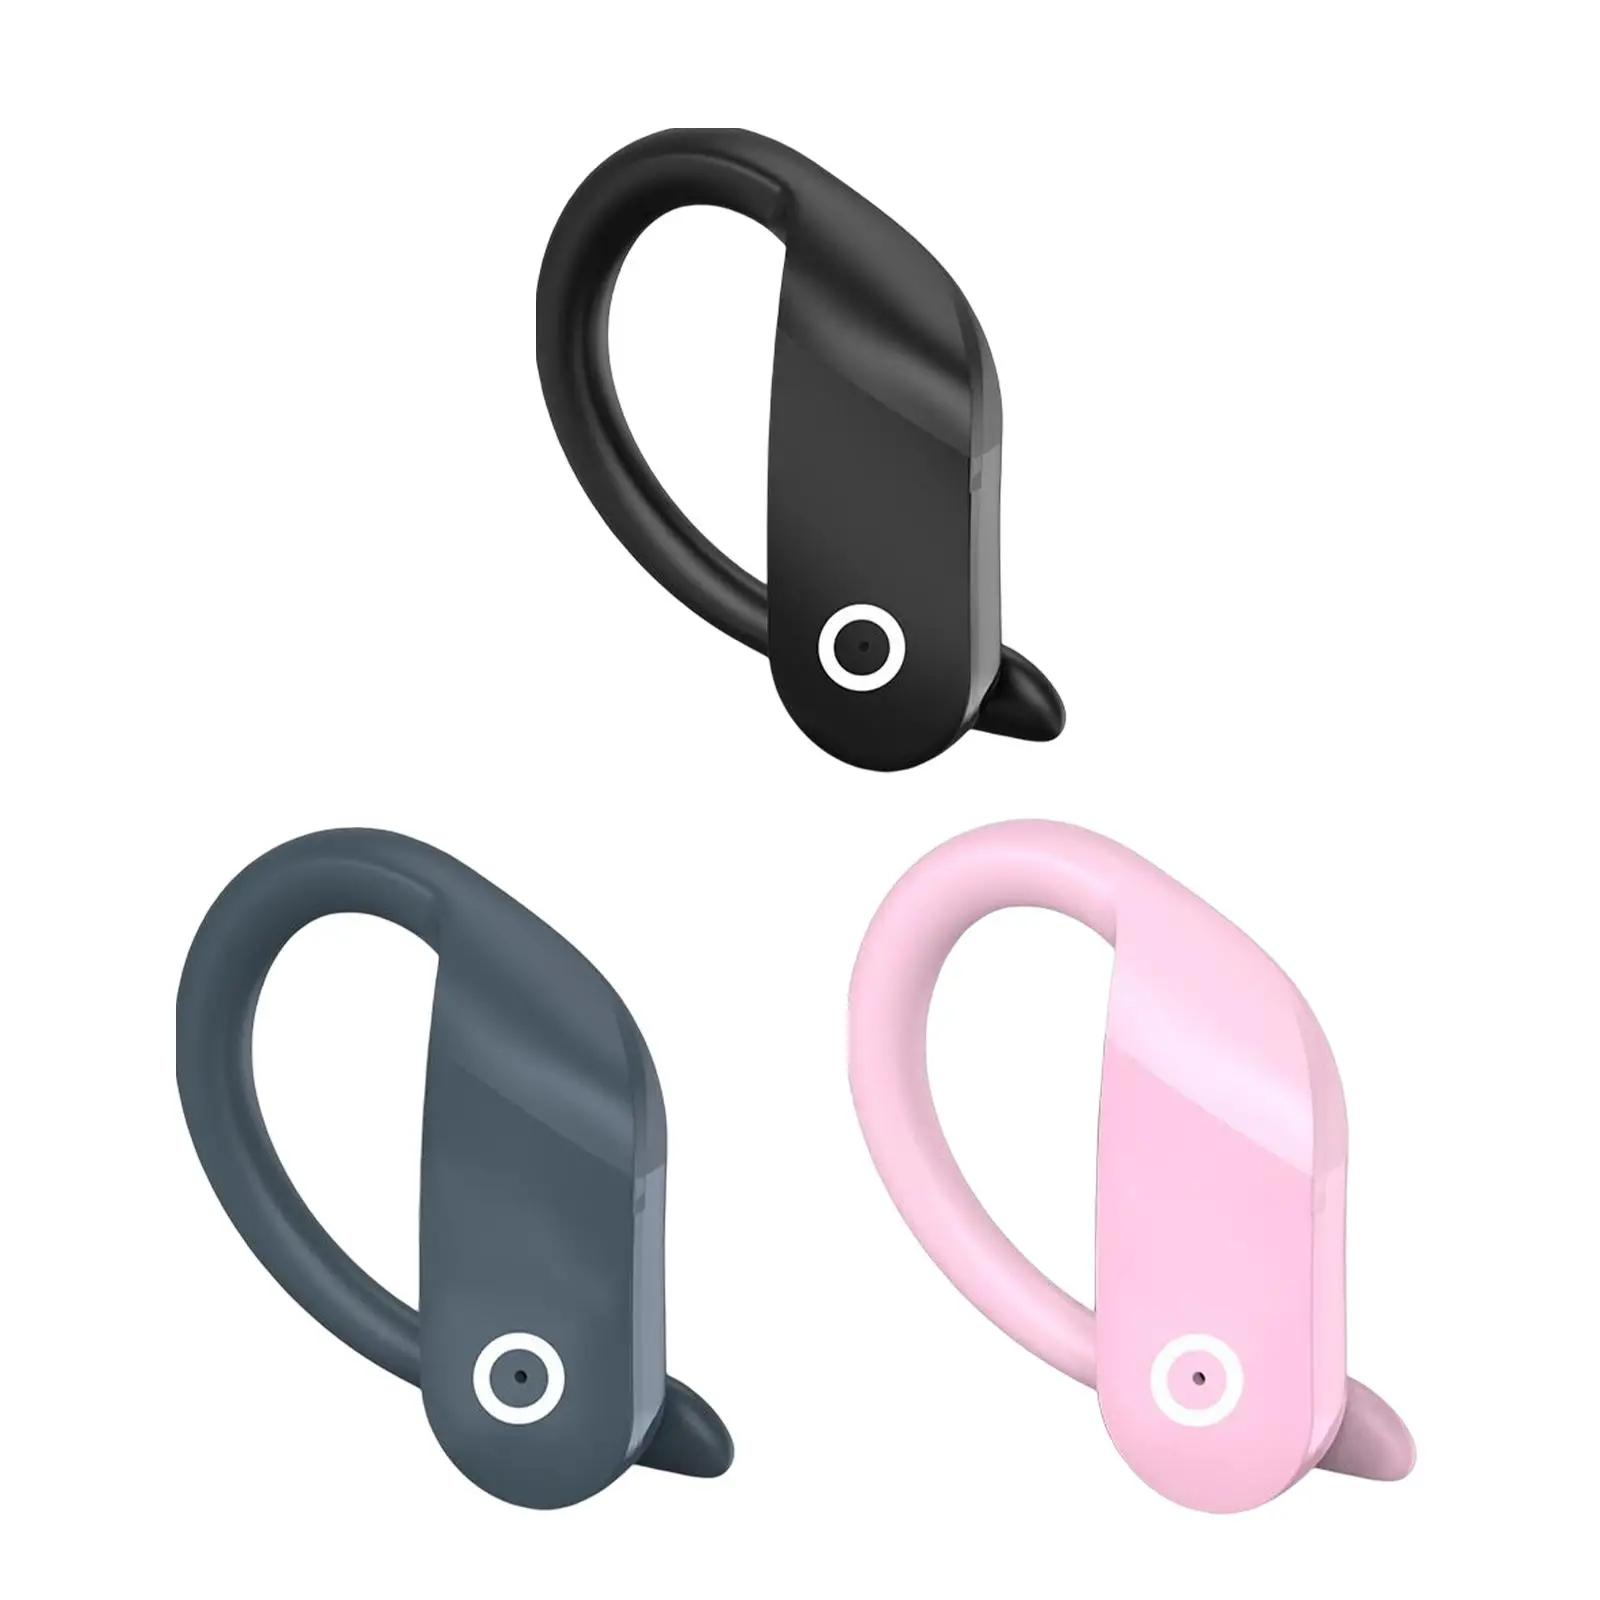 Wireless Sports Headphone Earpiece Business Earphone Lightweight Noise Canceling Waterproof Portable Handsfree Headset for Yoga